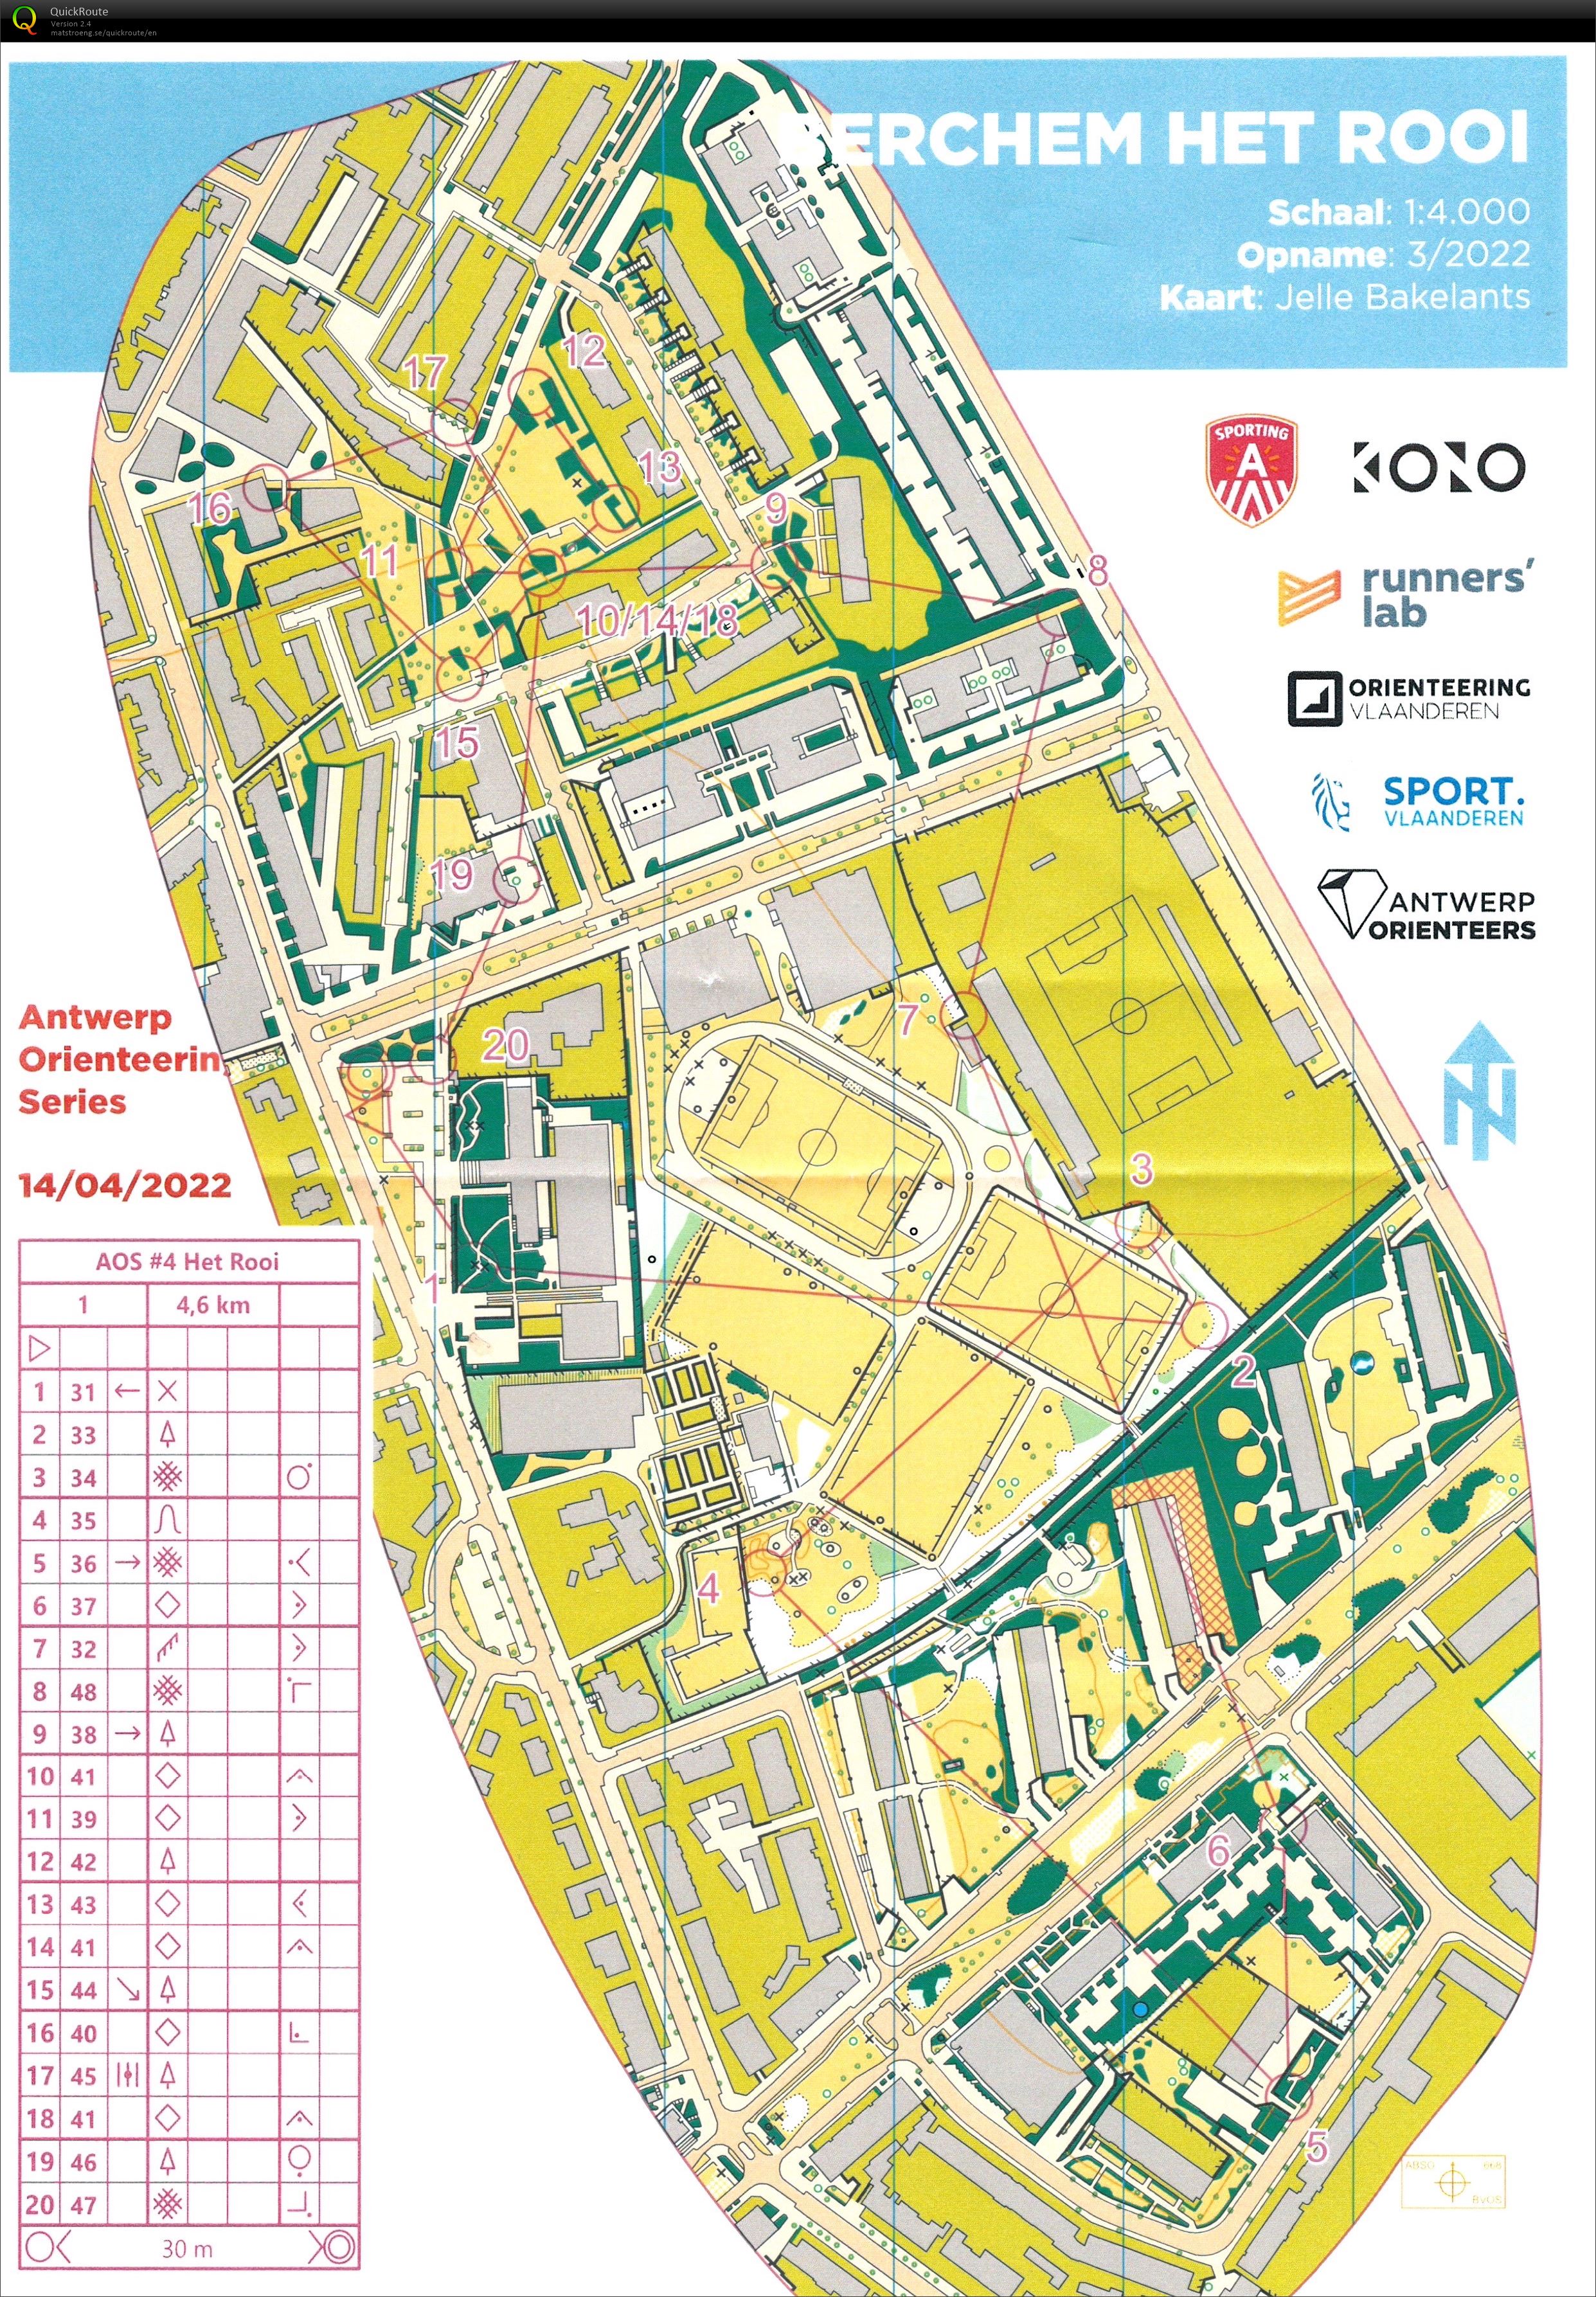 Antwerp Orienteering Series - Berchem - Het Rooi - 5K (14/04/2022)